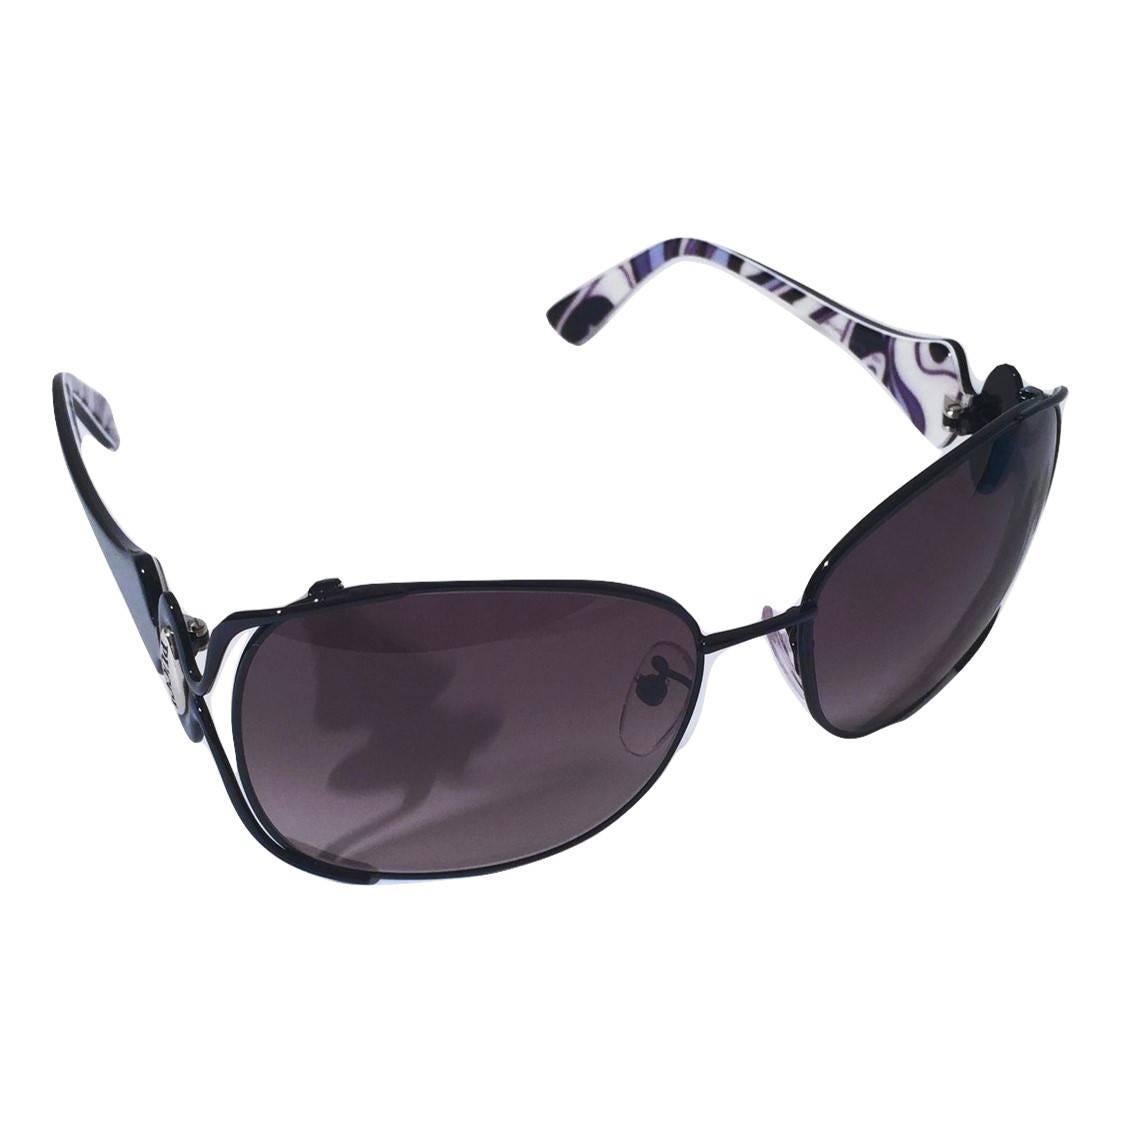 New Emilio Pucci Black Aviator Sunglasses With Case & Box 7